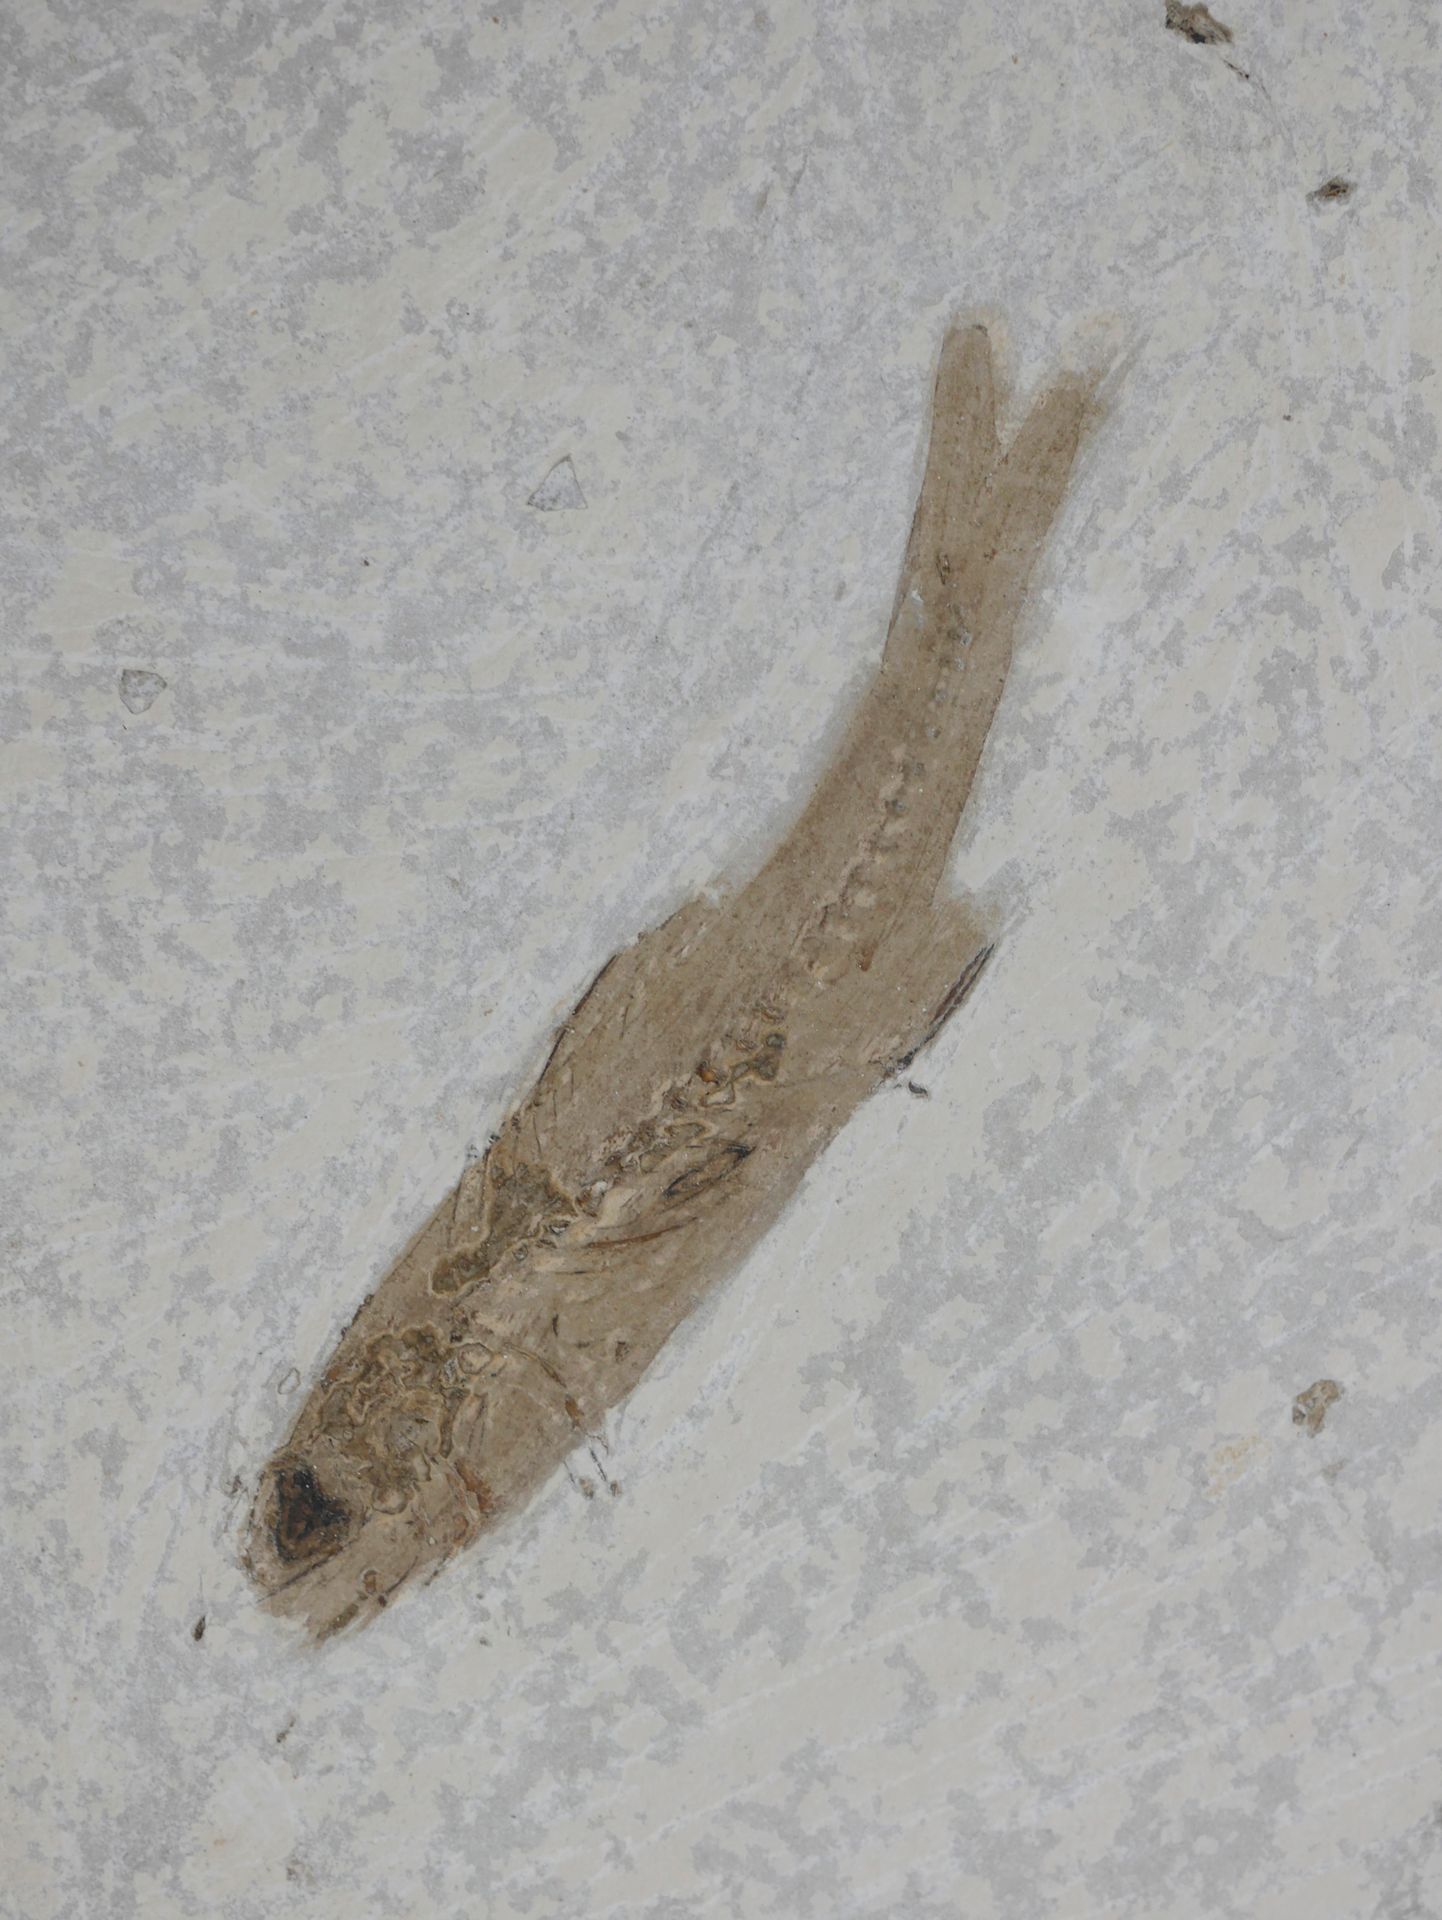 Null Fossiler Fisch Dapalis macrurus aus dem Oligozän. 

Etwa 35 Millionen Jahre&hellip;